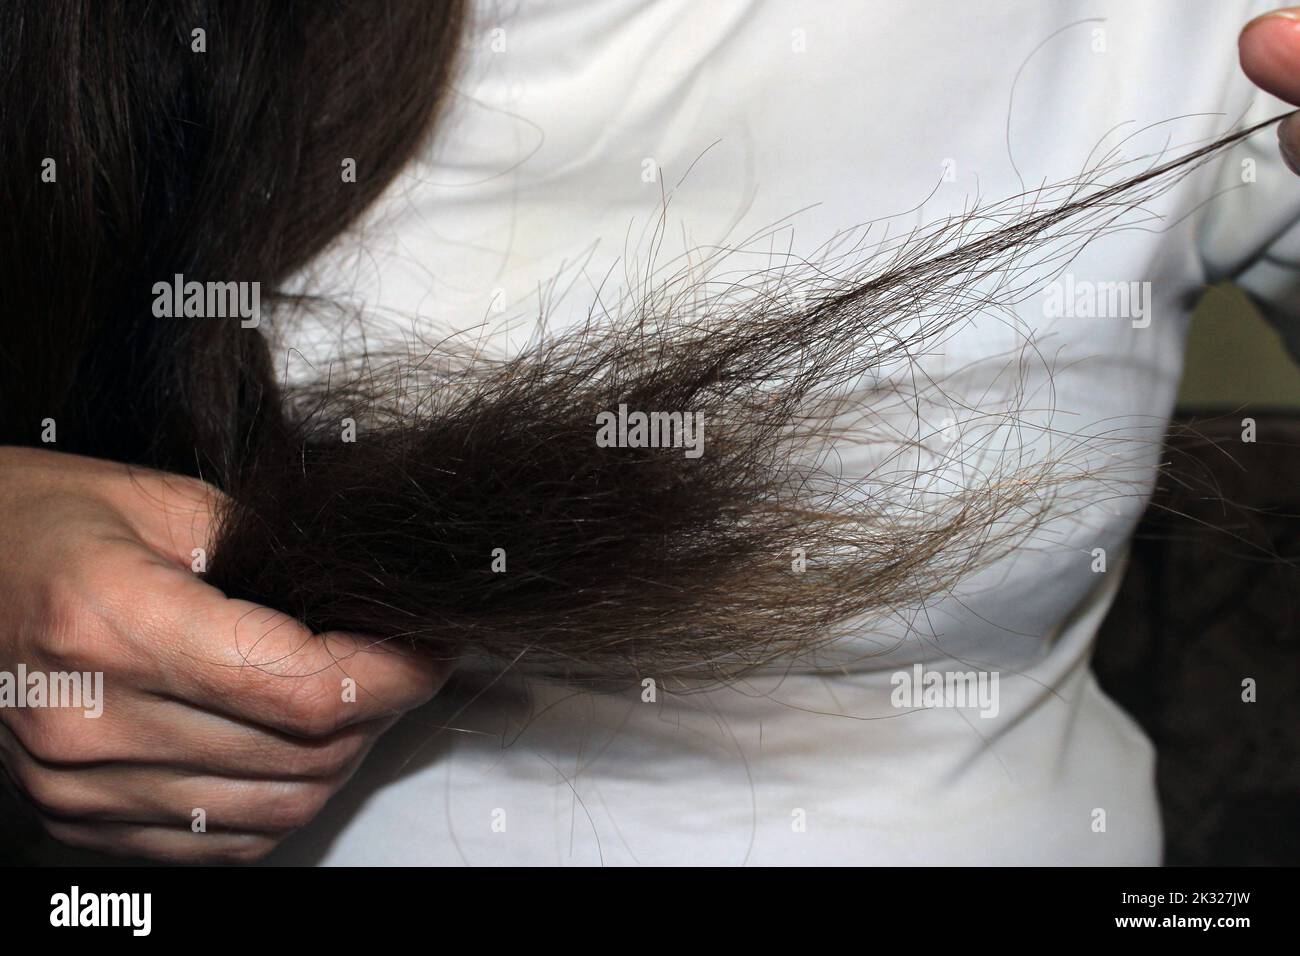 Una ragazza con lunghi capelli scuri tiene in mano le estremità dei capelli danneggiati. Problema di perdita dei capelli. Foto Stock